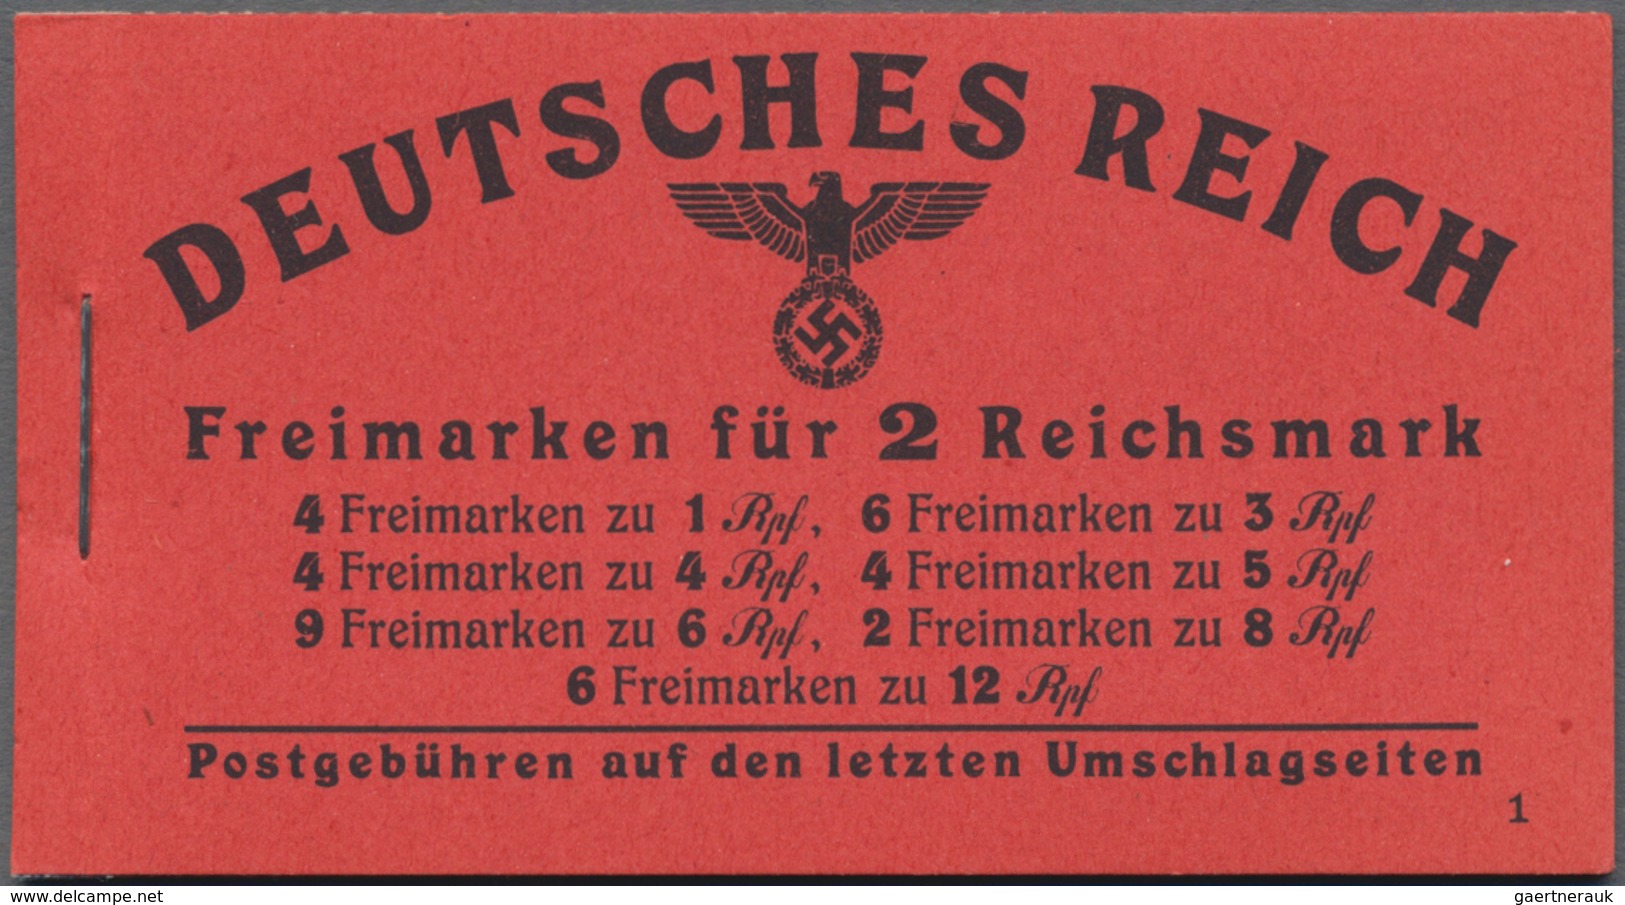 Deutsches Reich - Markenheftchen: 1919/1941, saubere Sammlung von 21 postfrischen Markenheftchen mit